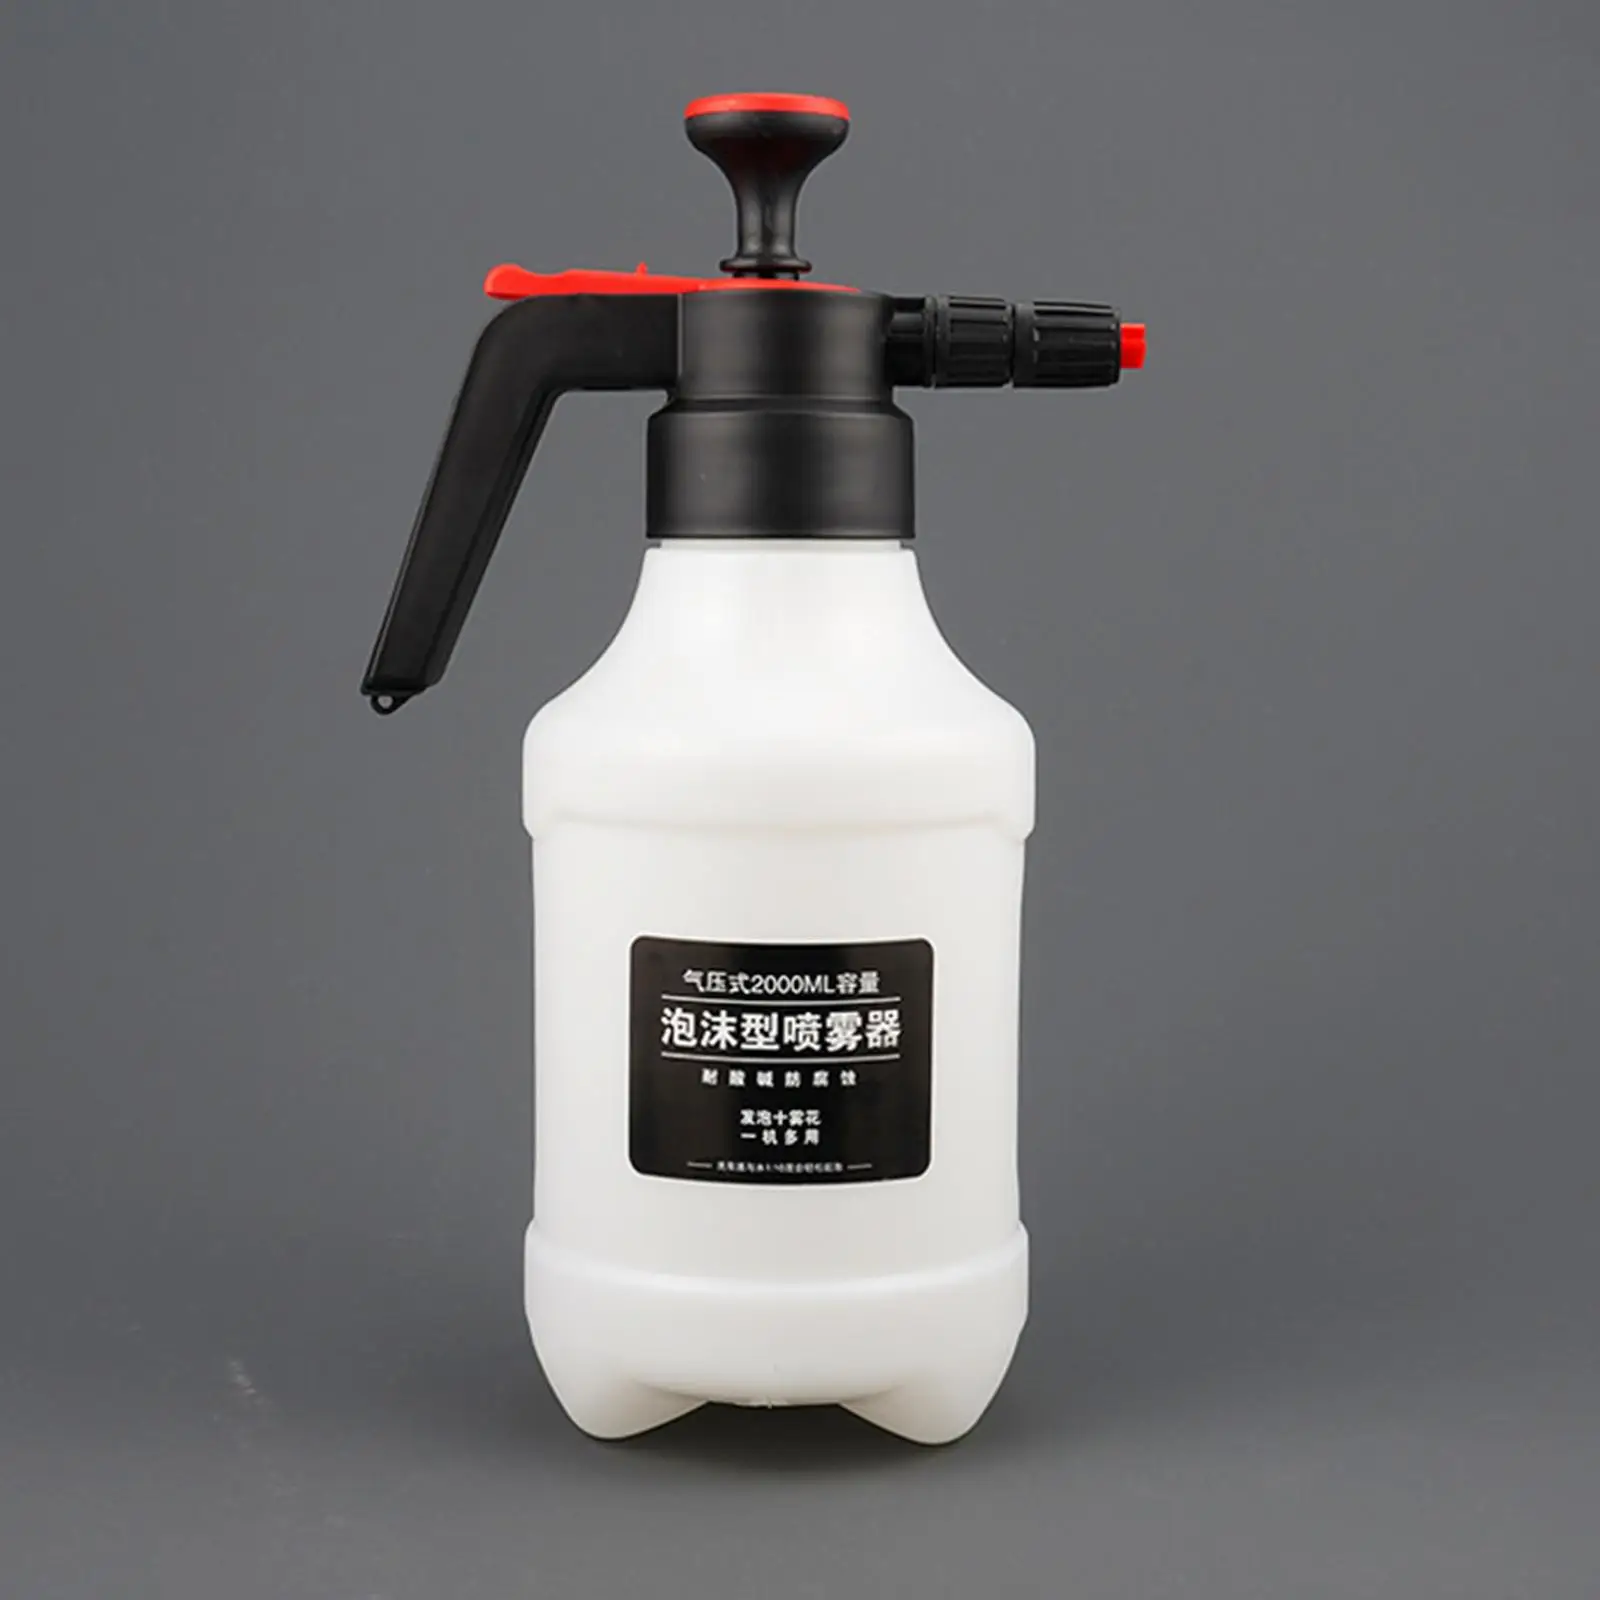 Car Snow Foam Water Sprayer Hand Pressurized Foam Cannon Car Wash 2.0L Soap Sprayer for Car Window Washing Automotive Detailing